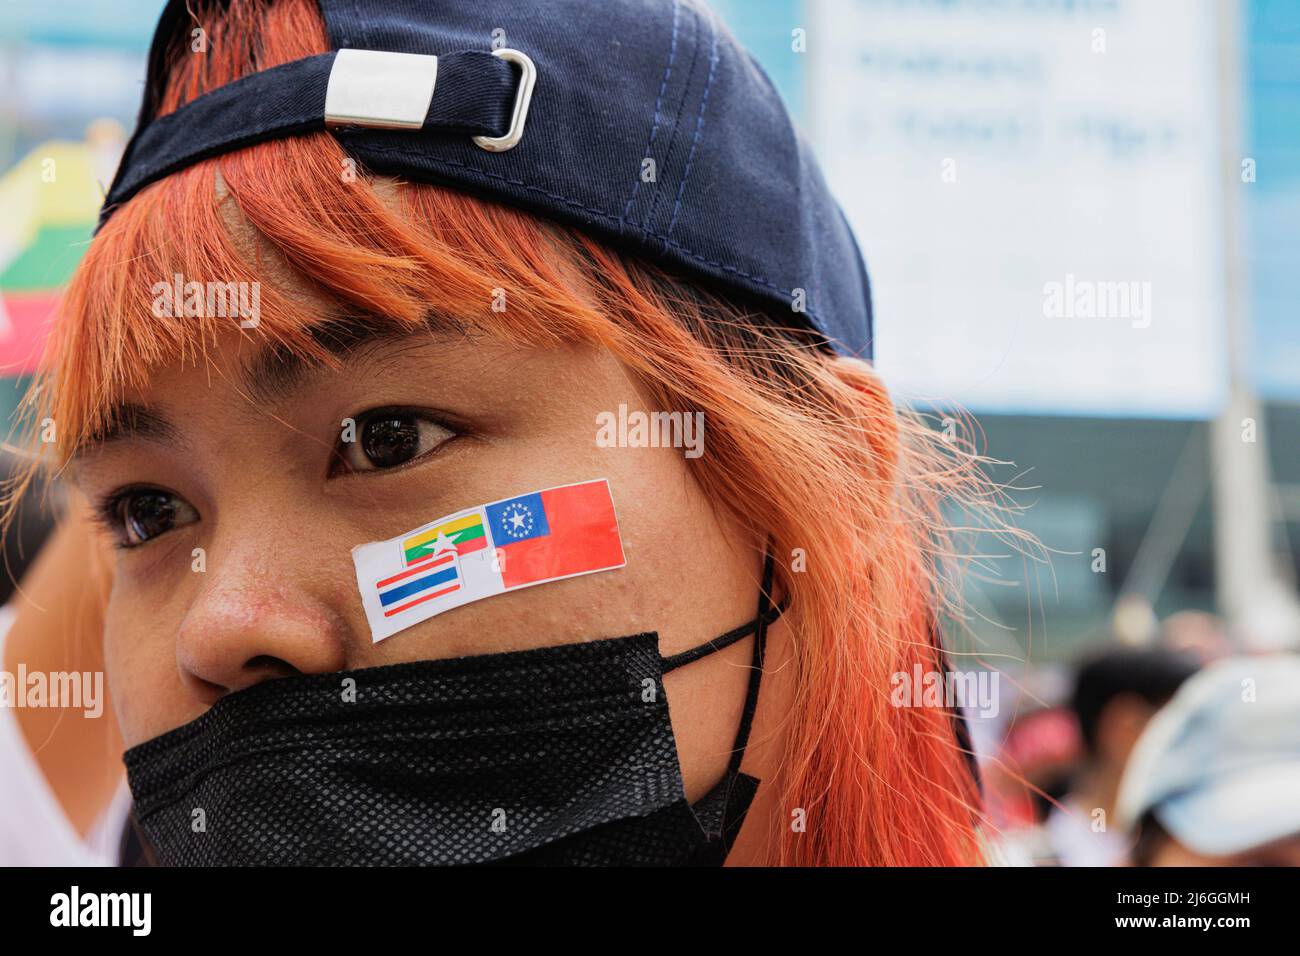 Während der Demonstration wurde die in Myanmar geplate Demonstratorin mit einem Aufkleber im Gesicht gesehen. Die Arbeitergewerkschaft veranstaltete am Tag der Arbeit in Bangkok, Thailand, eine Parade. An der Parade nahmen verschiedene Gruppen Teil, darunter die thailändische Arbeitergruppe, die myanmarische Arbeitergruppe und die pro-demokratische Gruppe. Sie versammelten sich an der Ratchaprosong Road und marschierten dann zur Kreuzung Pathumwan, Demonstranten forderten Wohlfahrt, faire Zinszahlungen und auch Demokratie (einschließlich Thailand und Myanmar). Stockfoto